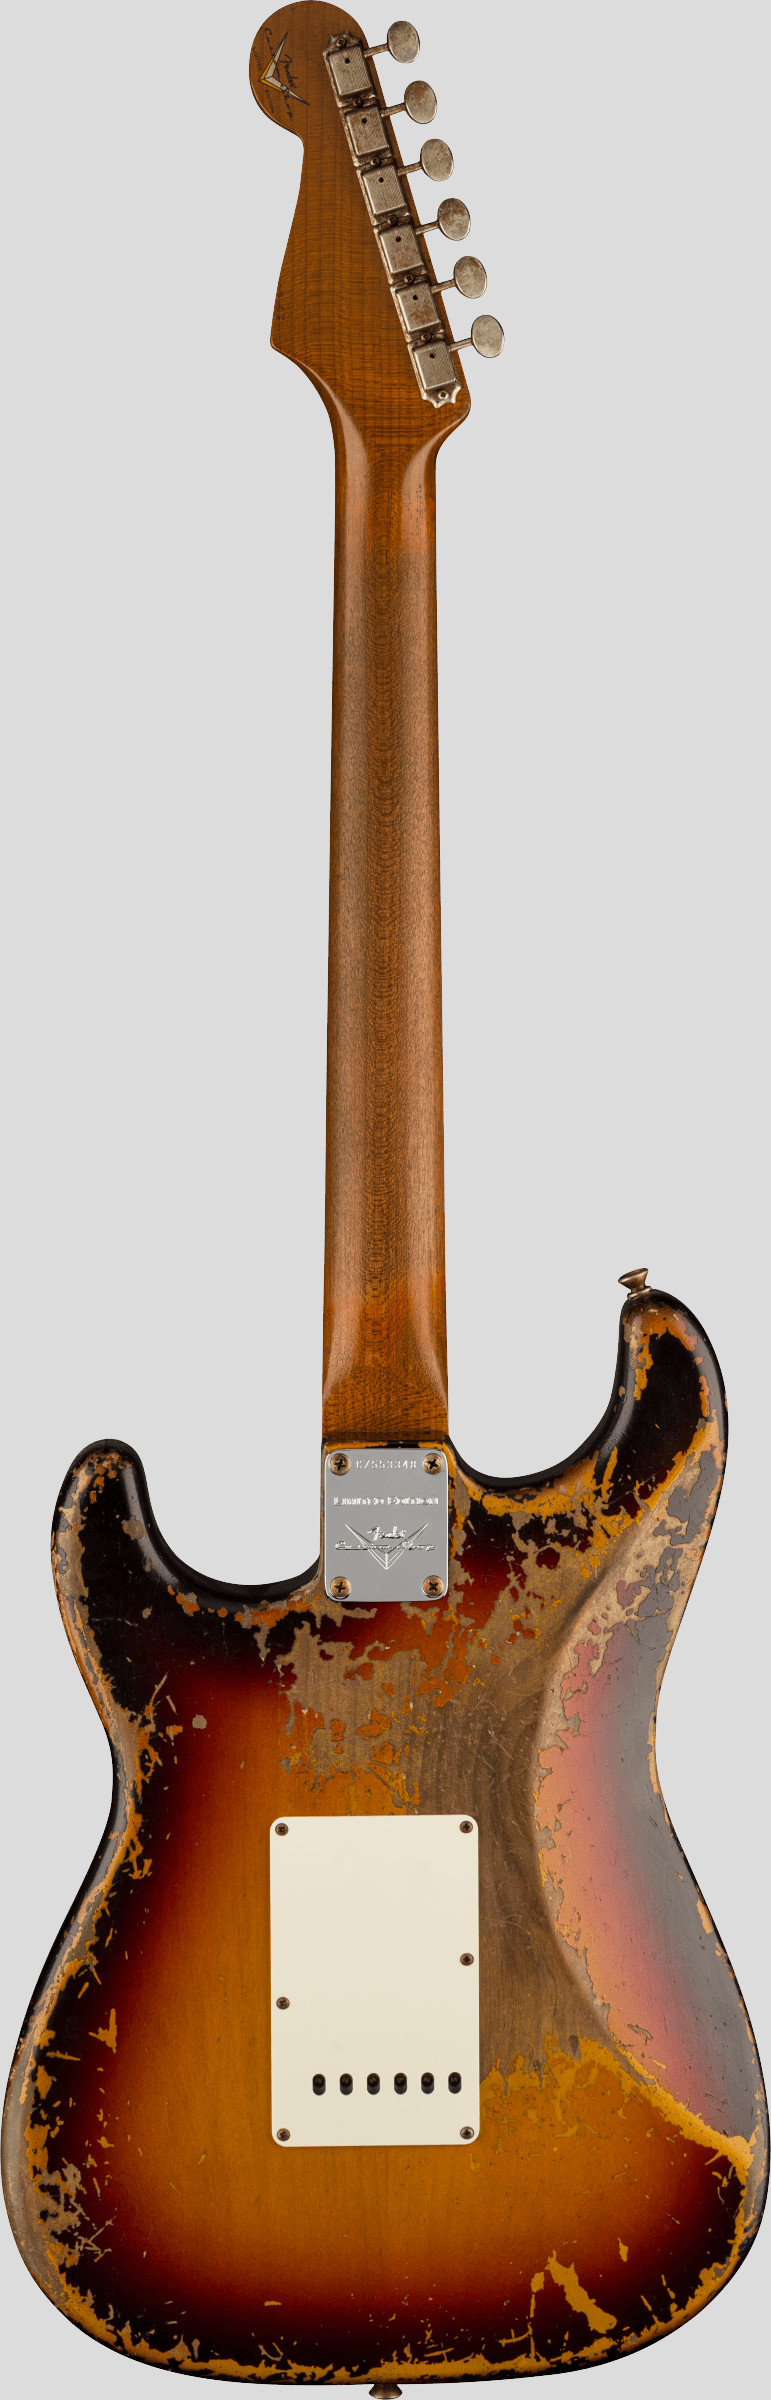 Fender Custom Shop Limited Edition Roasted 61 Stratocaster Aged 3-Color Sunburst SHR 2